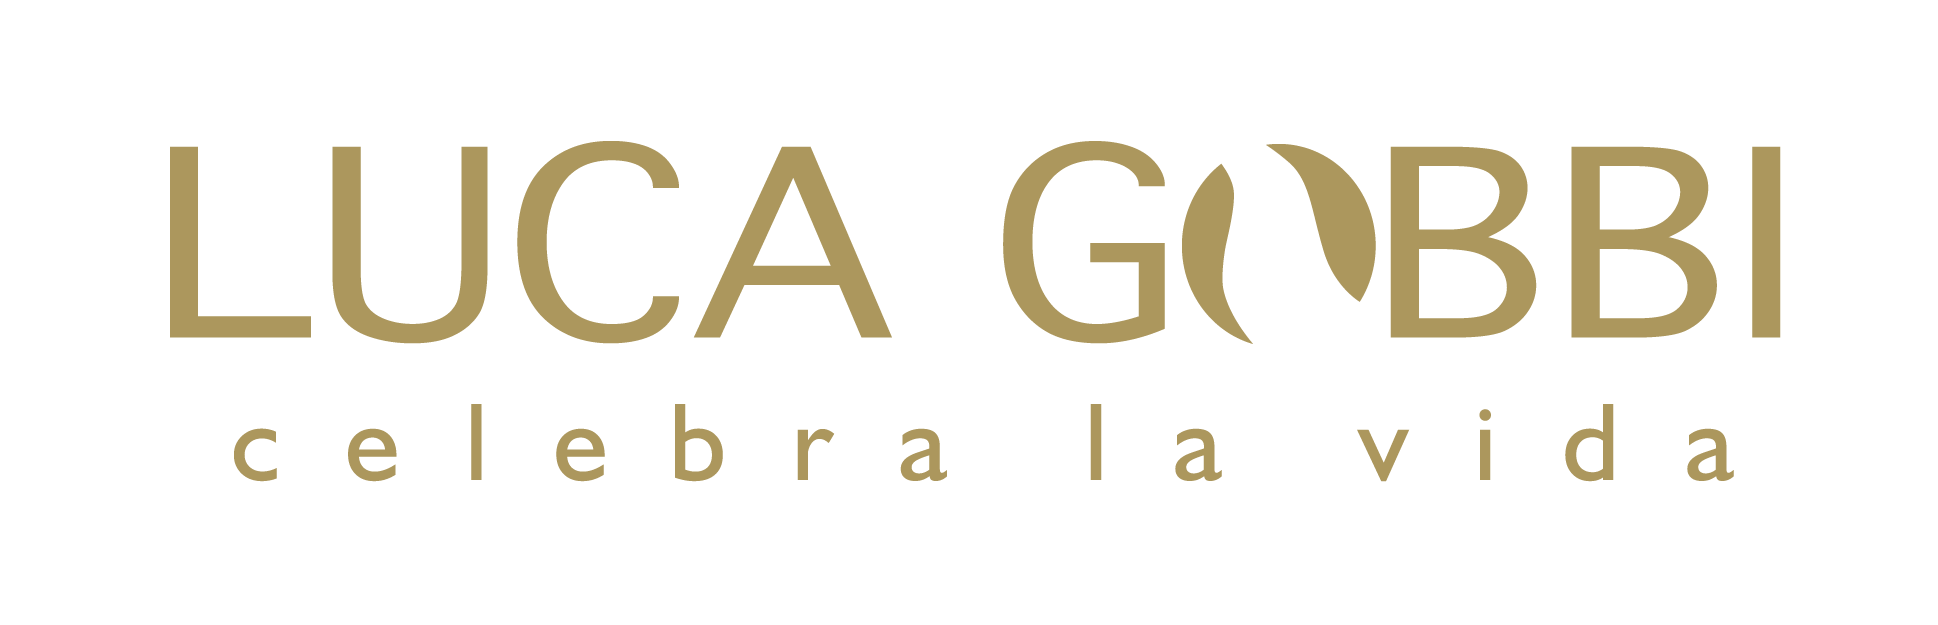 Centro de Ayuda Luca Gobbi logo